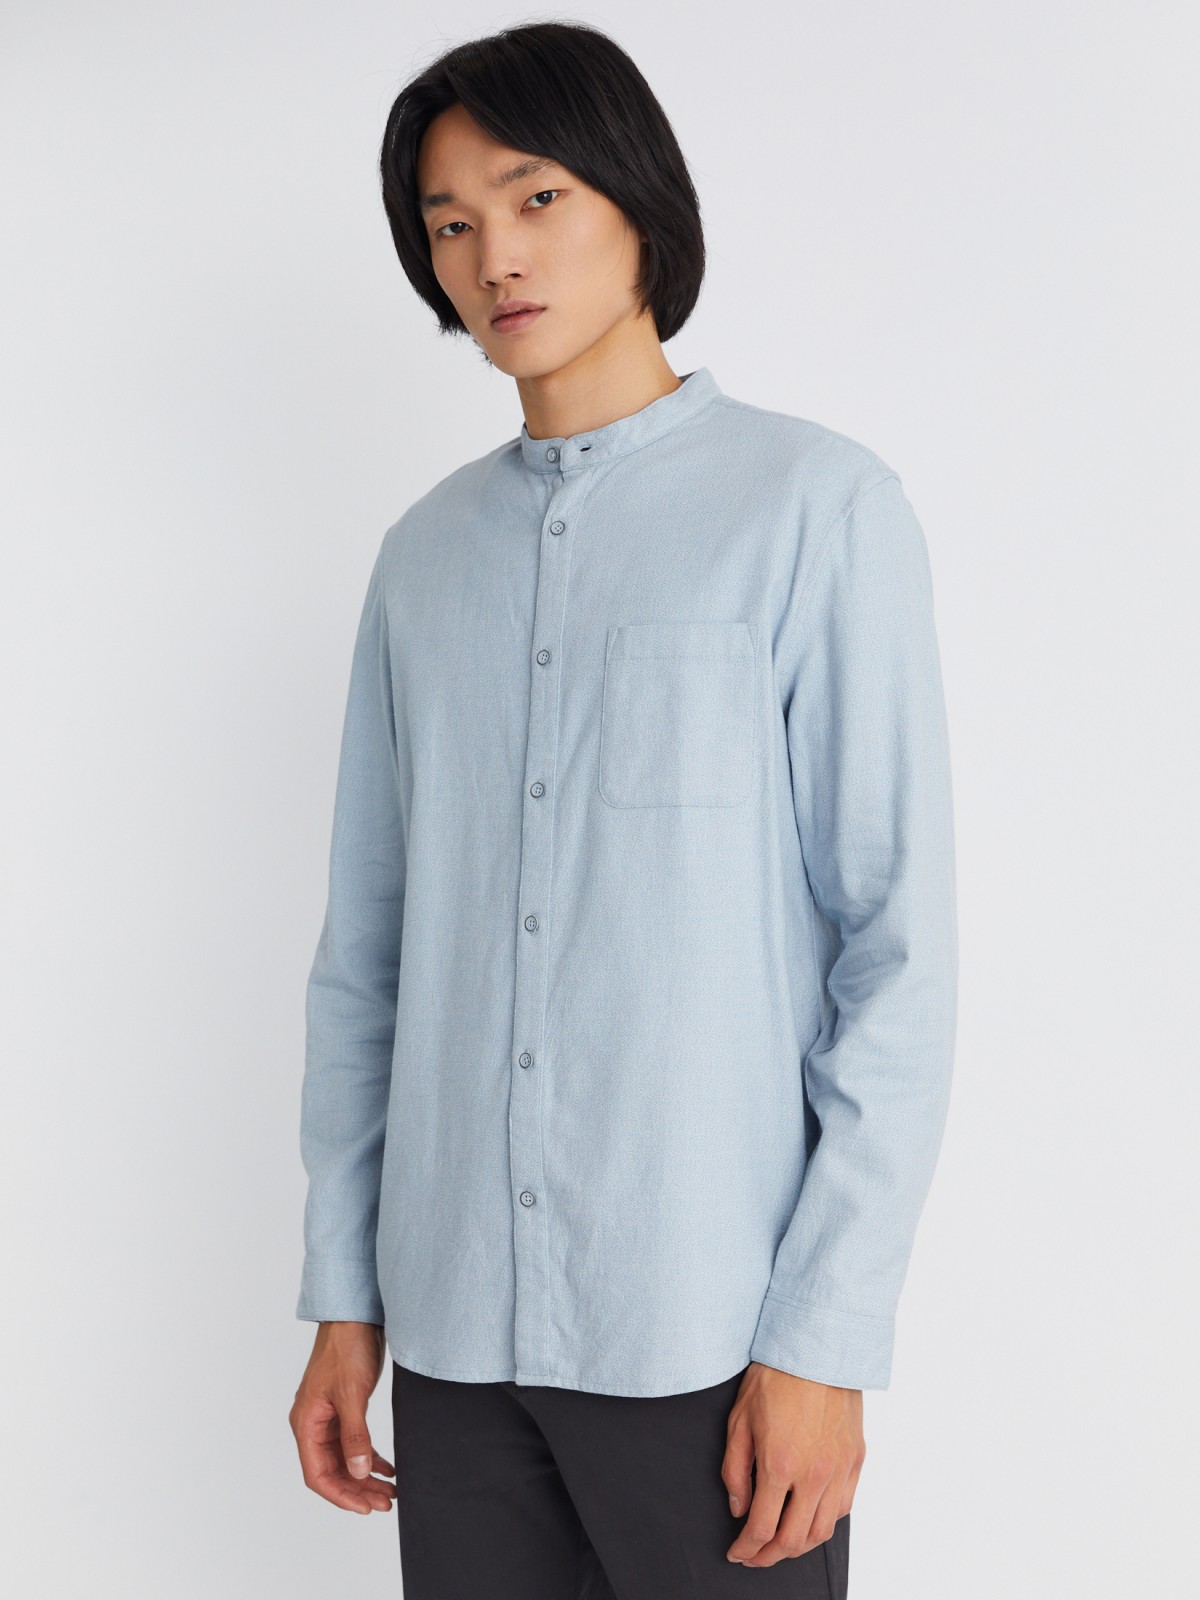 Фланелевая рубашка из хлопка с воротником-стойкой и длинным рукавом zolla 013332162013, цвет светло-голубой, размер S - фото 3